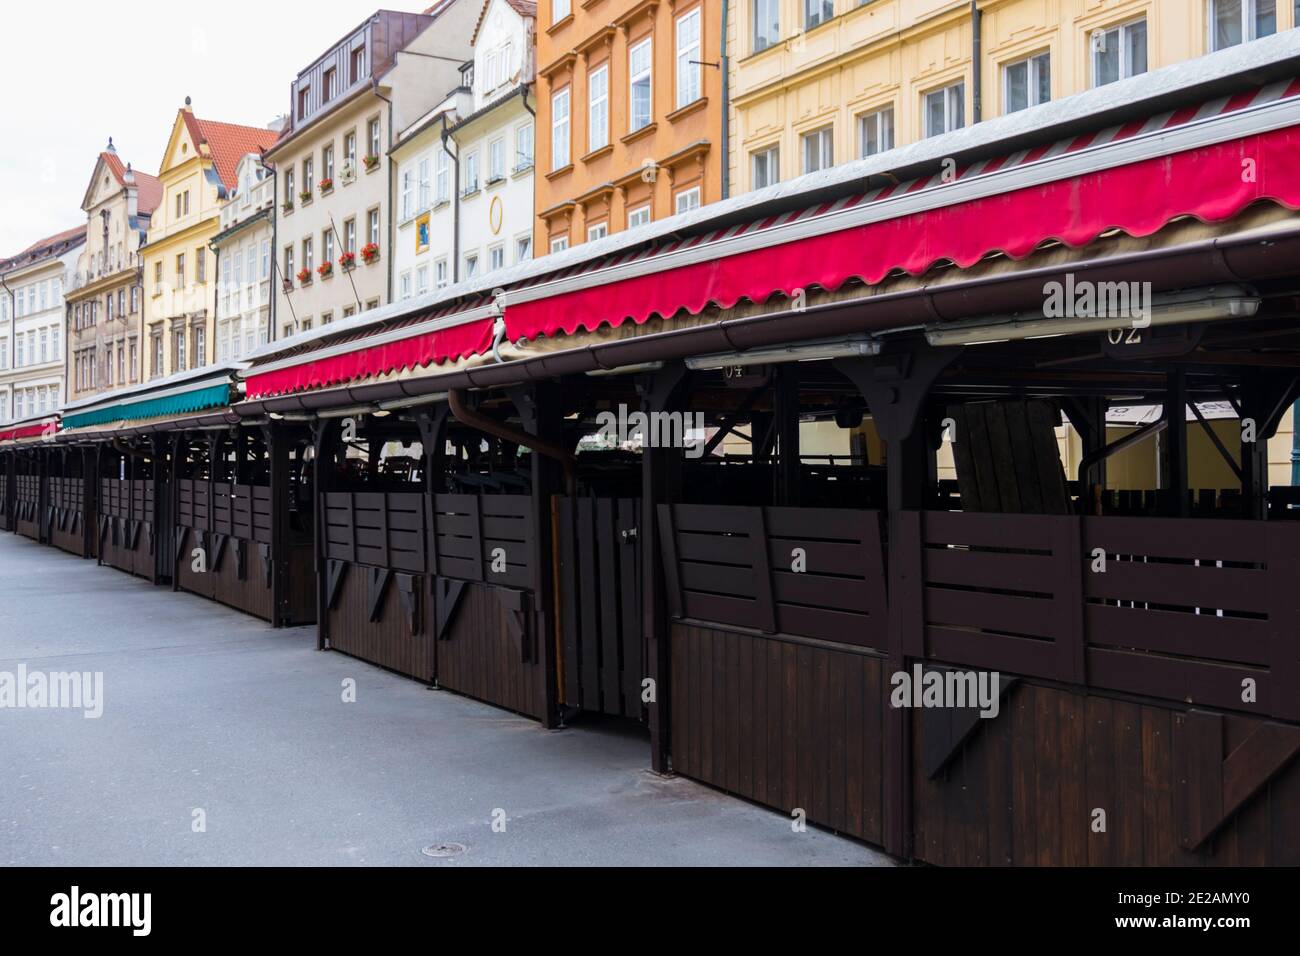 Chiuso lungo il mercato Havelska Street durante la chiusura Covid-19, città vecchia, Praga, Repubblica Ceca Foto Stock